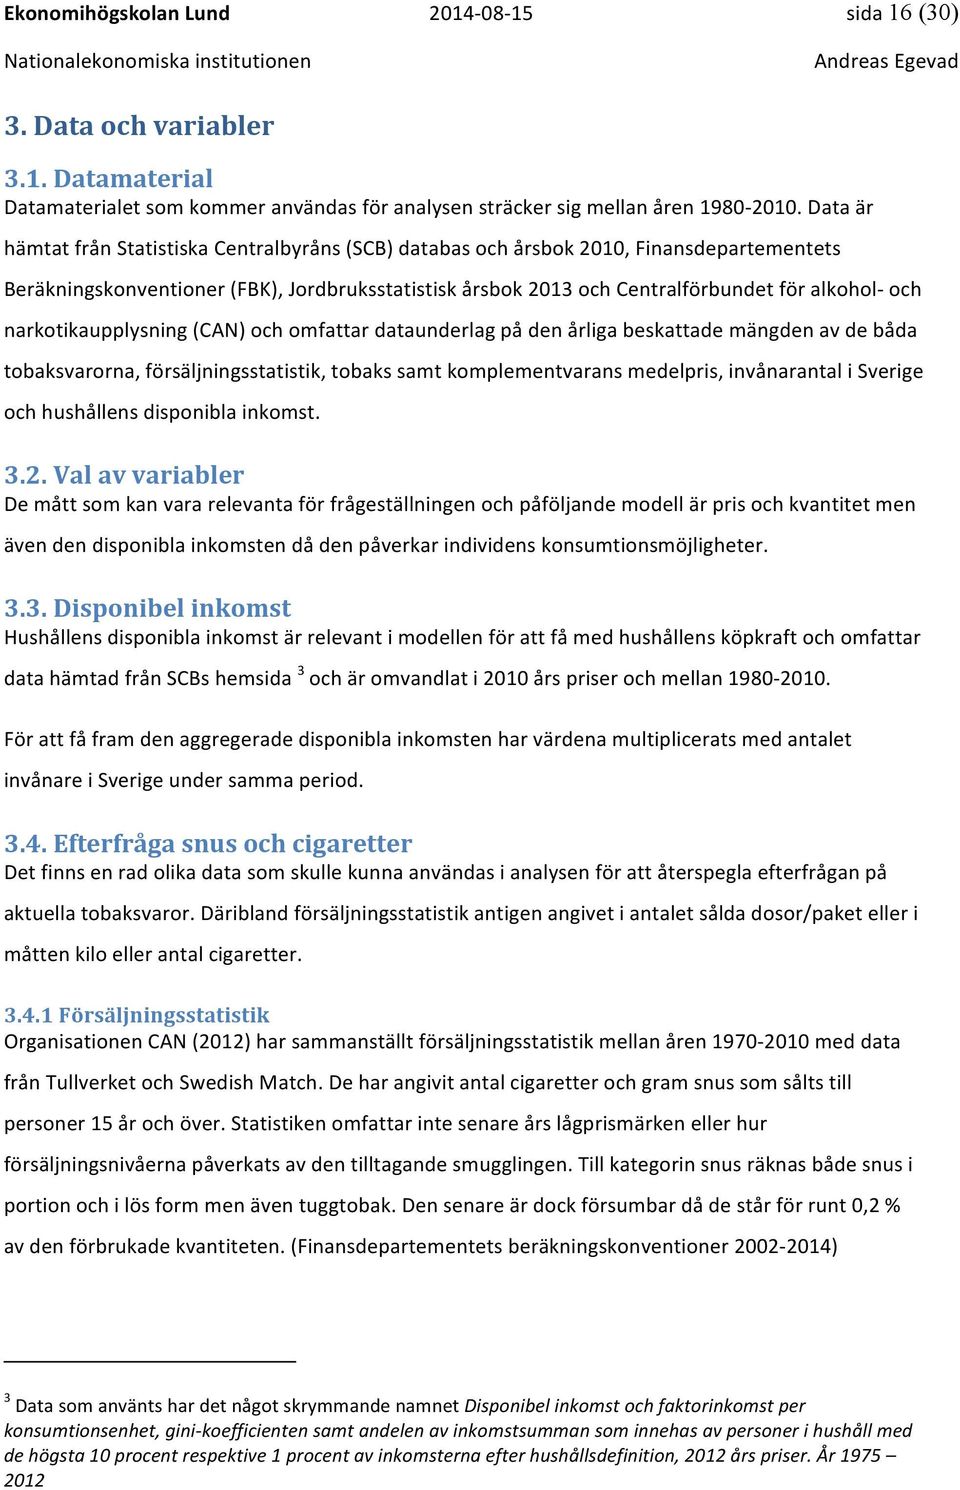 narkotikaupplysning (CAN) och omfattar dataunderlag på den årliga beskattade mängden av de båda tobaksvarorna, försäljningsstatistik, tobaks samt komplementvarans medelpris, invånarantal i Sverige